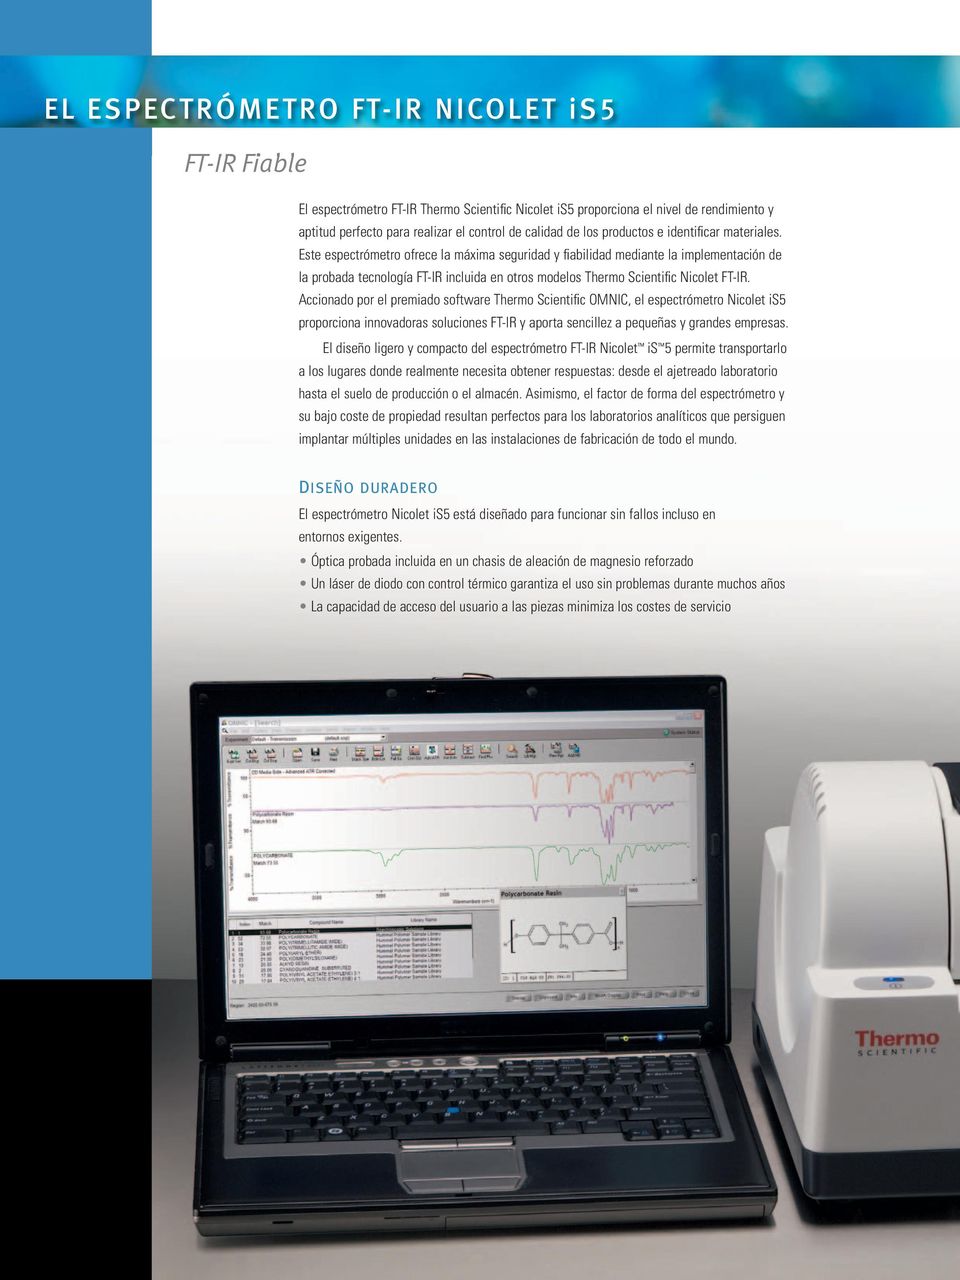 Este espectrómetro ofrece la máxima seguridad y fiabilidad mediante la implementación de la probada tecnología FT-IR incluida en otros modelos Thermo Scientific Nicolet FT-IR.